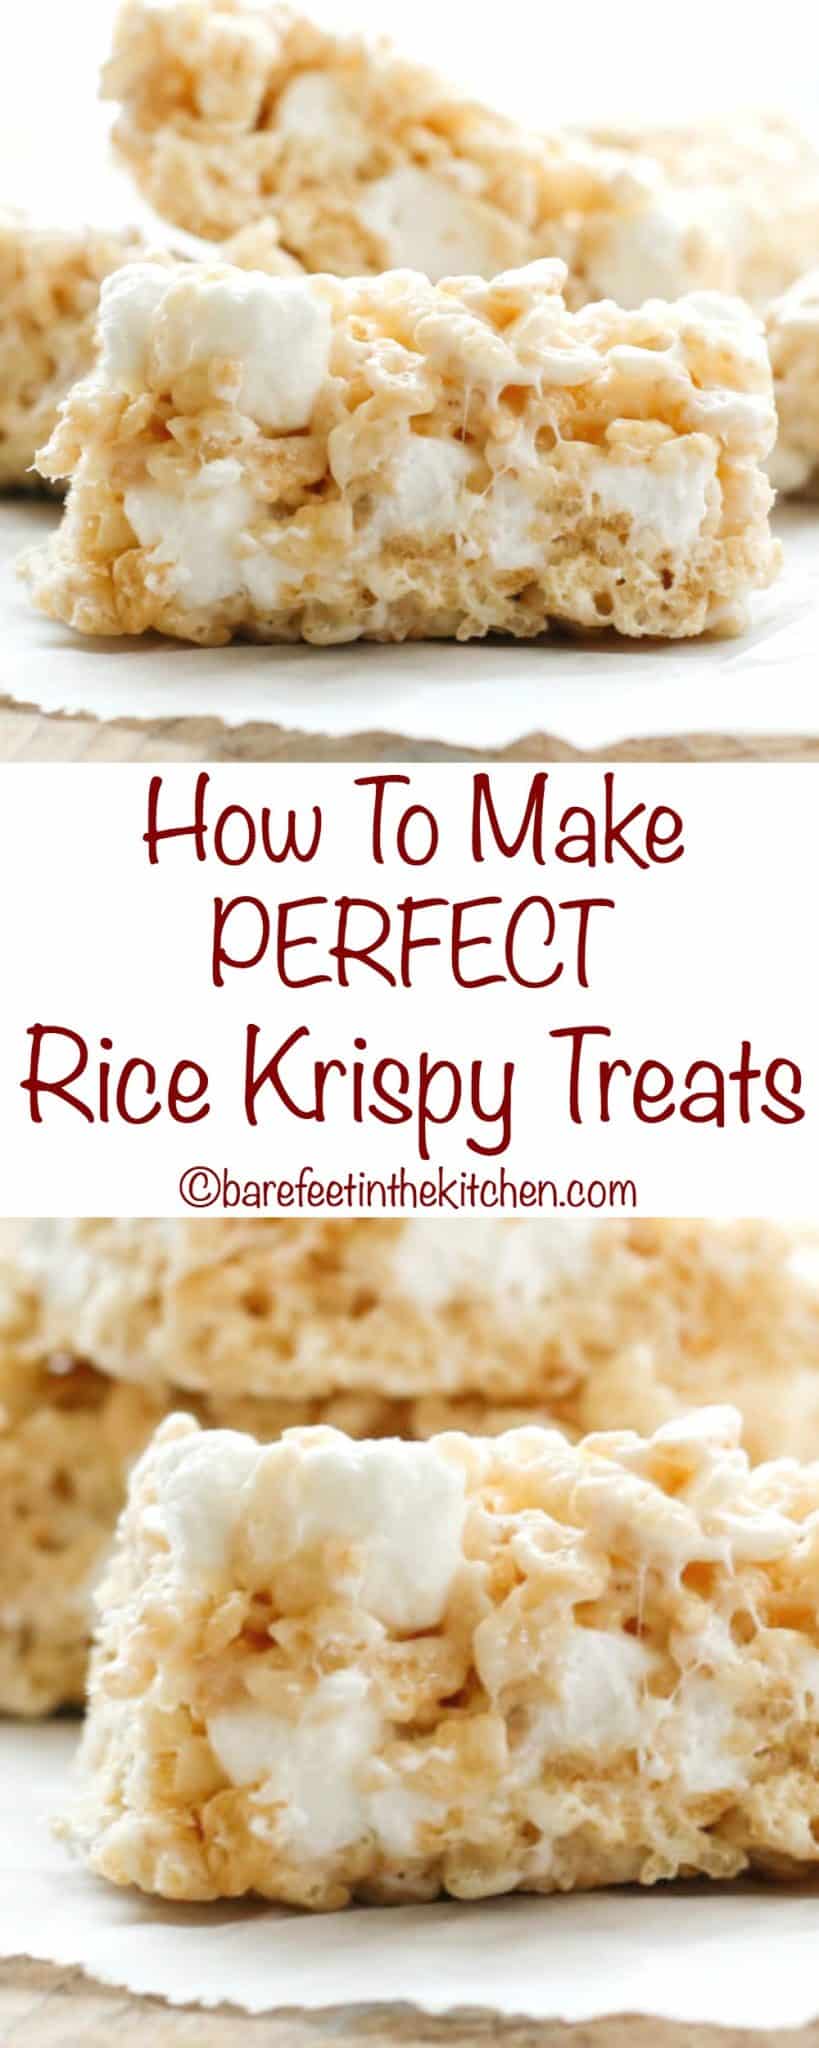 كيفية صنع حلوى الأرز المقرمشة المثالية - احصل على الوصفة في barefeetinthekitchen.com